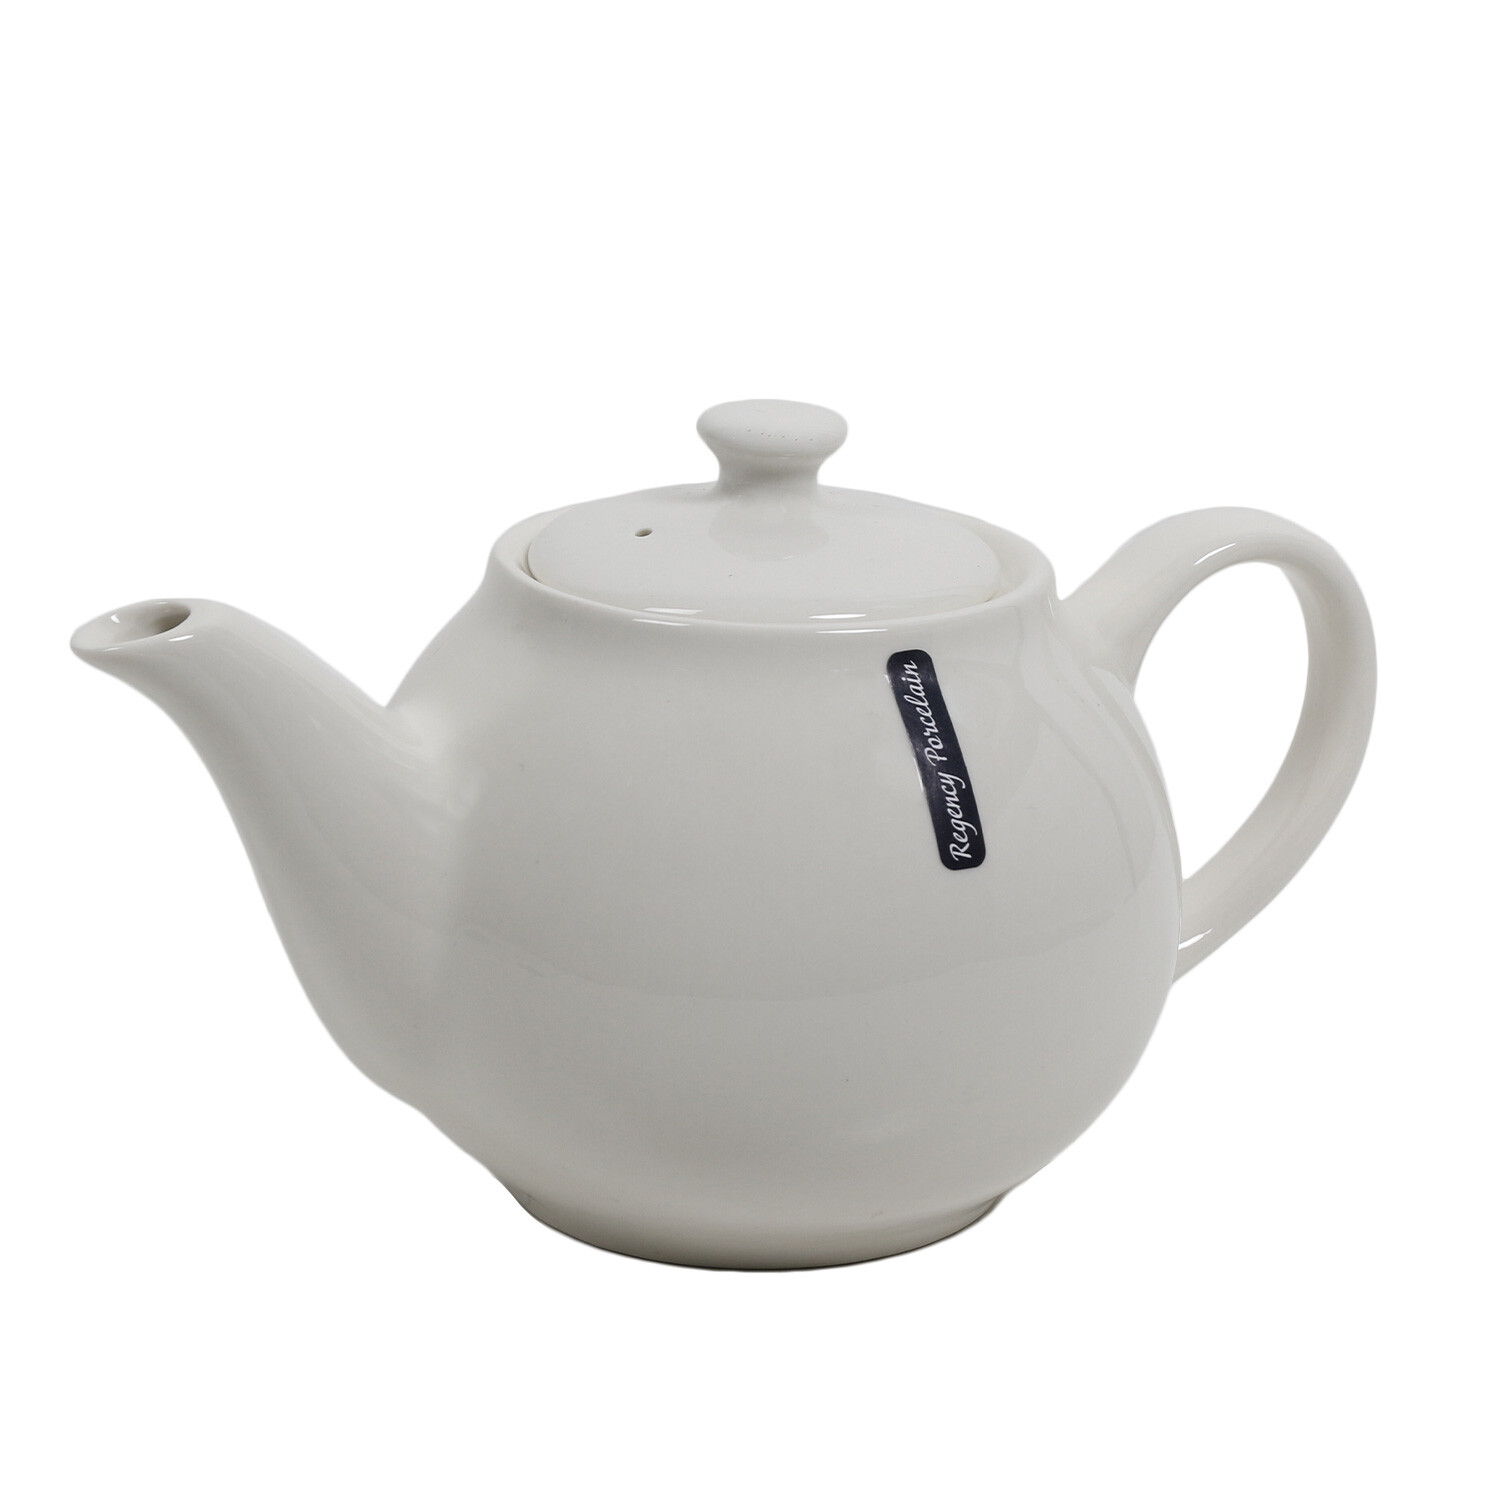 Regency Porcelain White Teapot Image 2